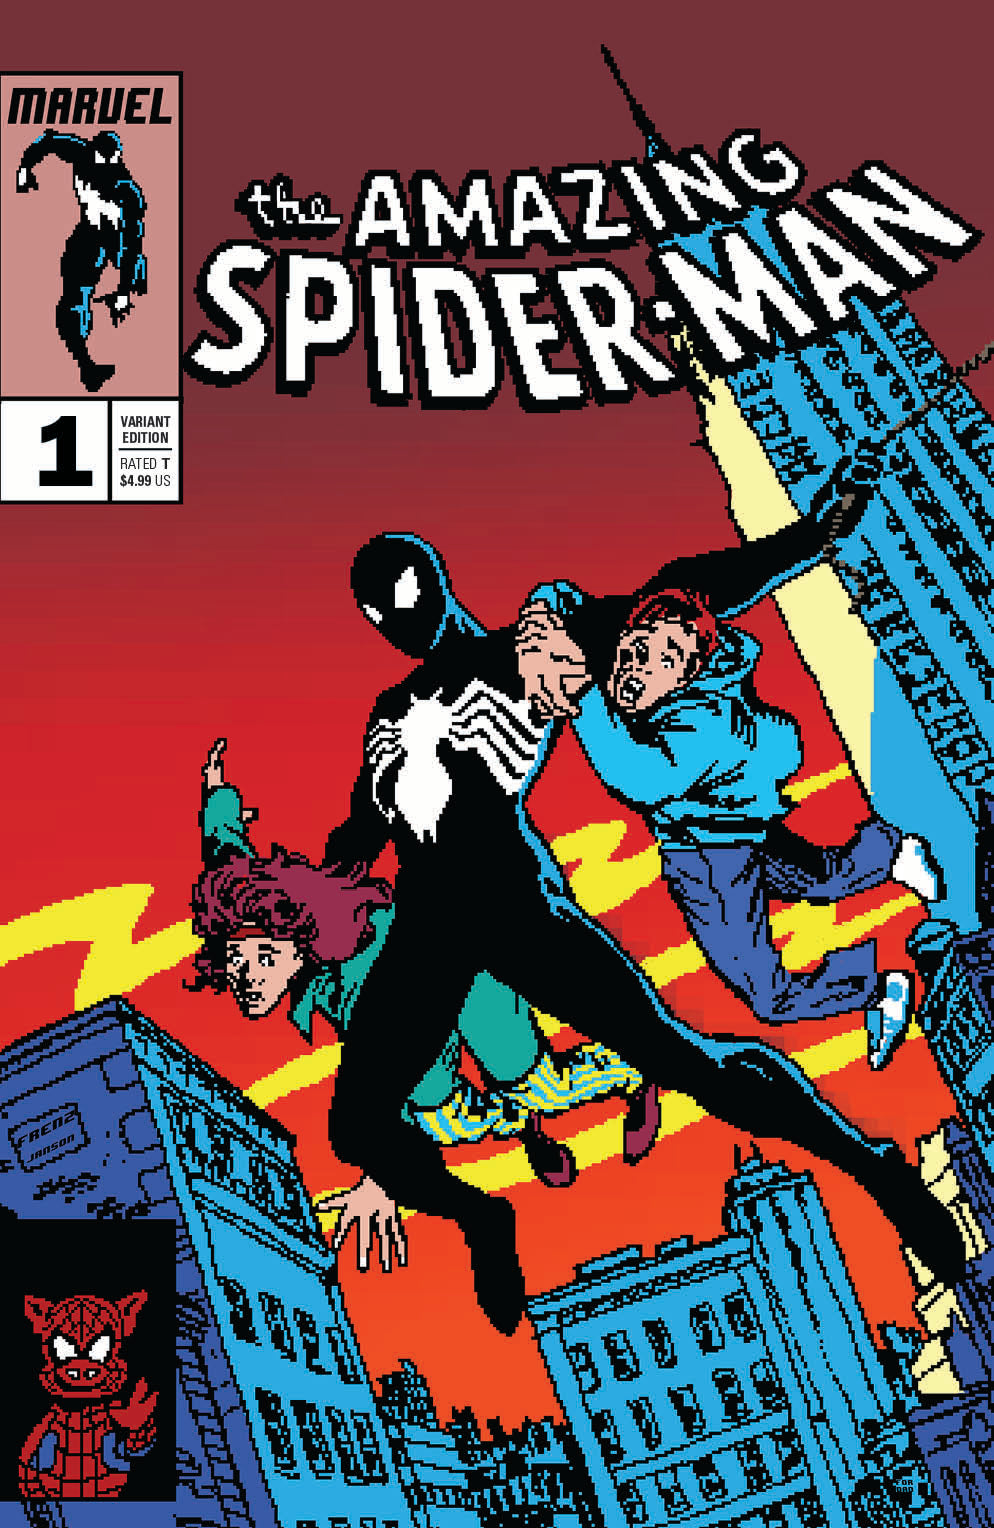 SYMBIOTE SPIDER-MAN #1 16 Bit Matthew Waite Variant Amazing Spider-Man 252 Homage (04/10/2019) MARVEL